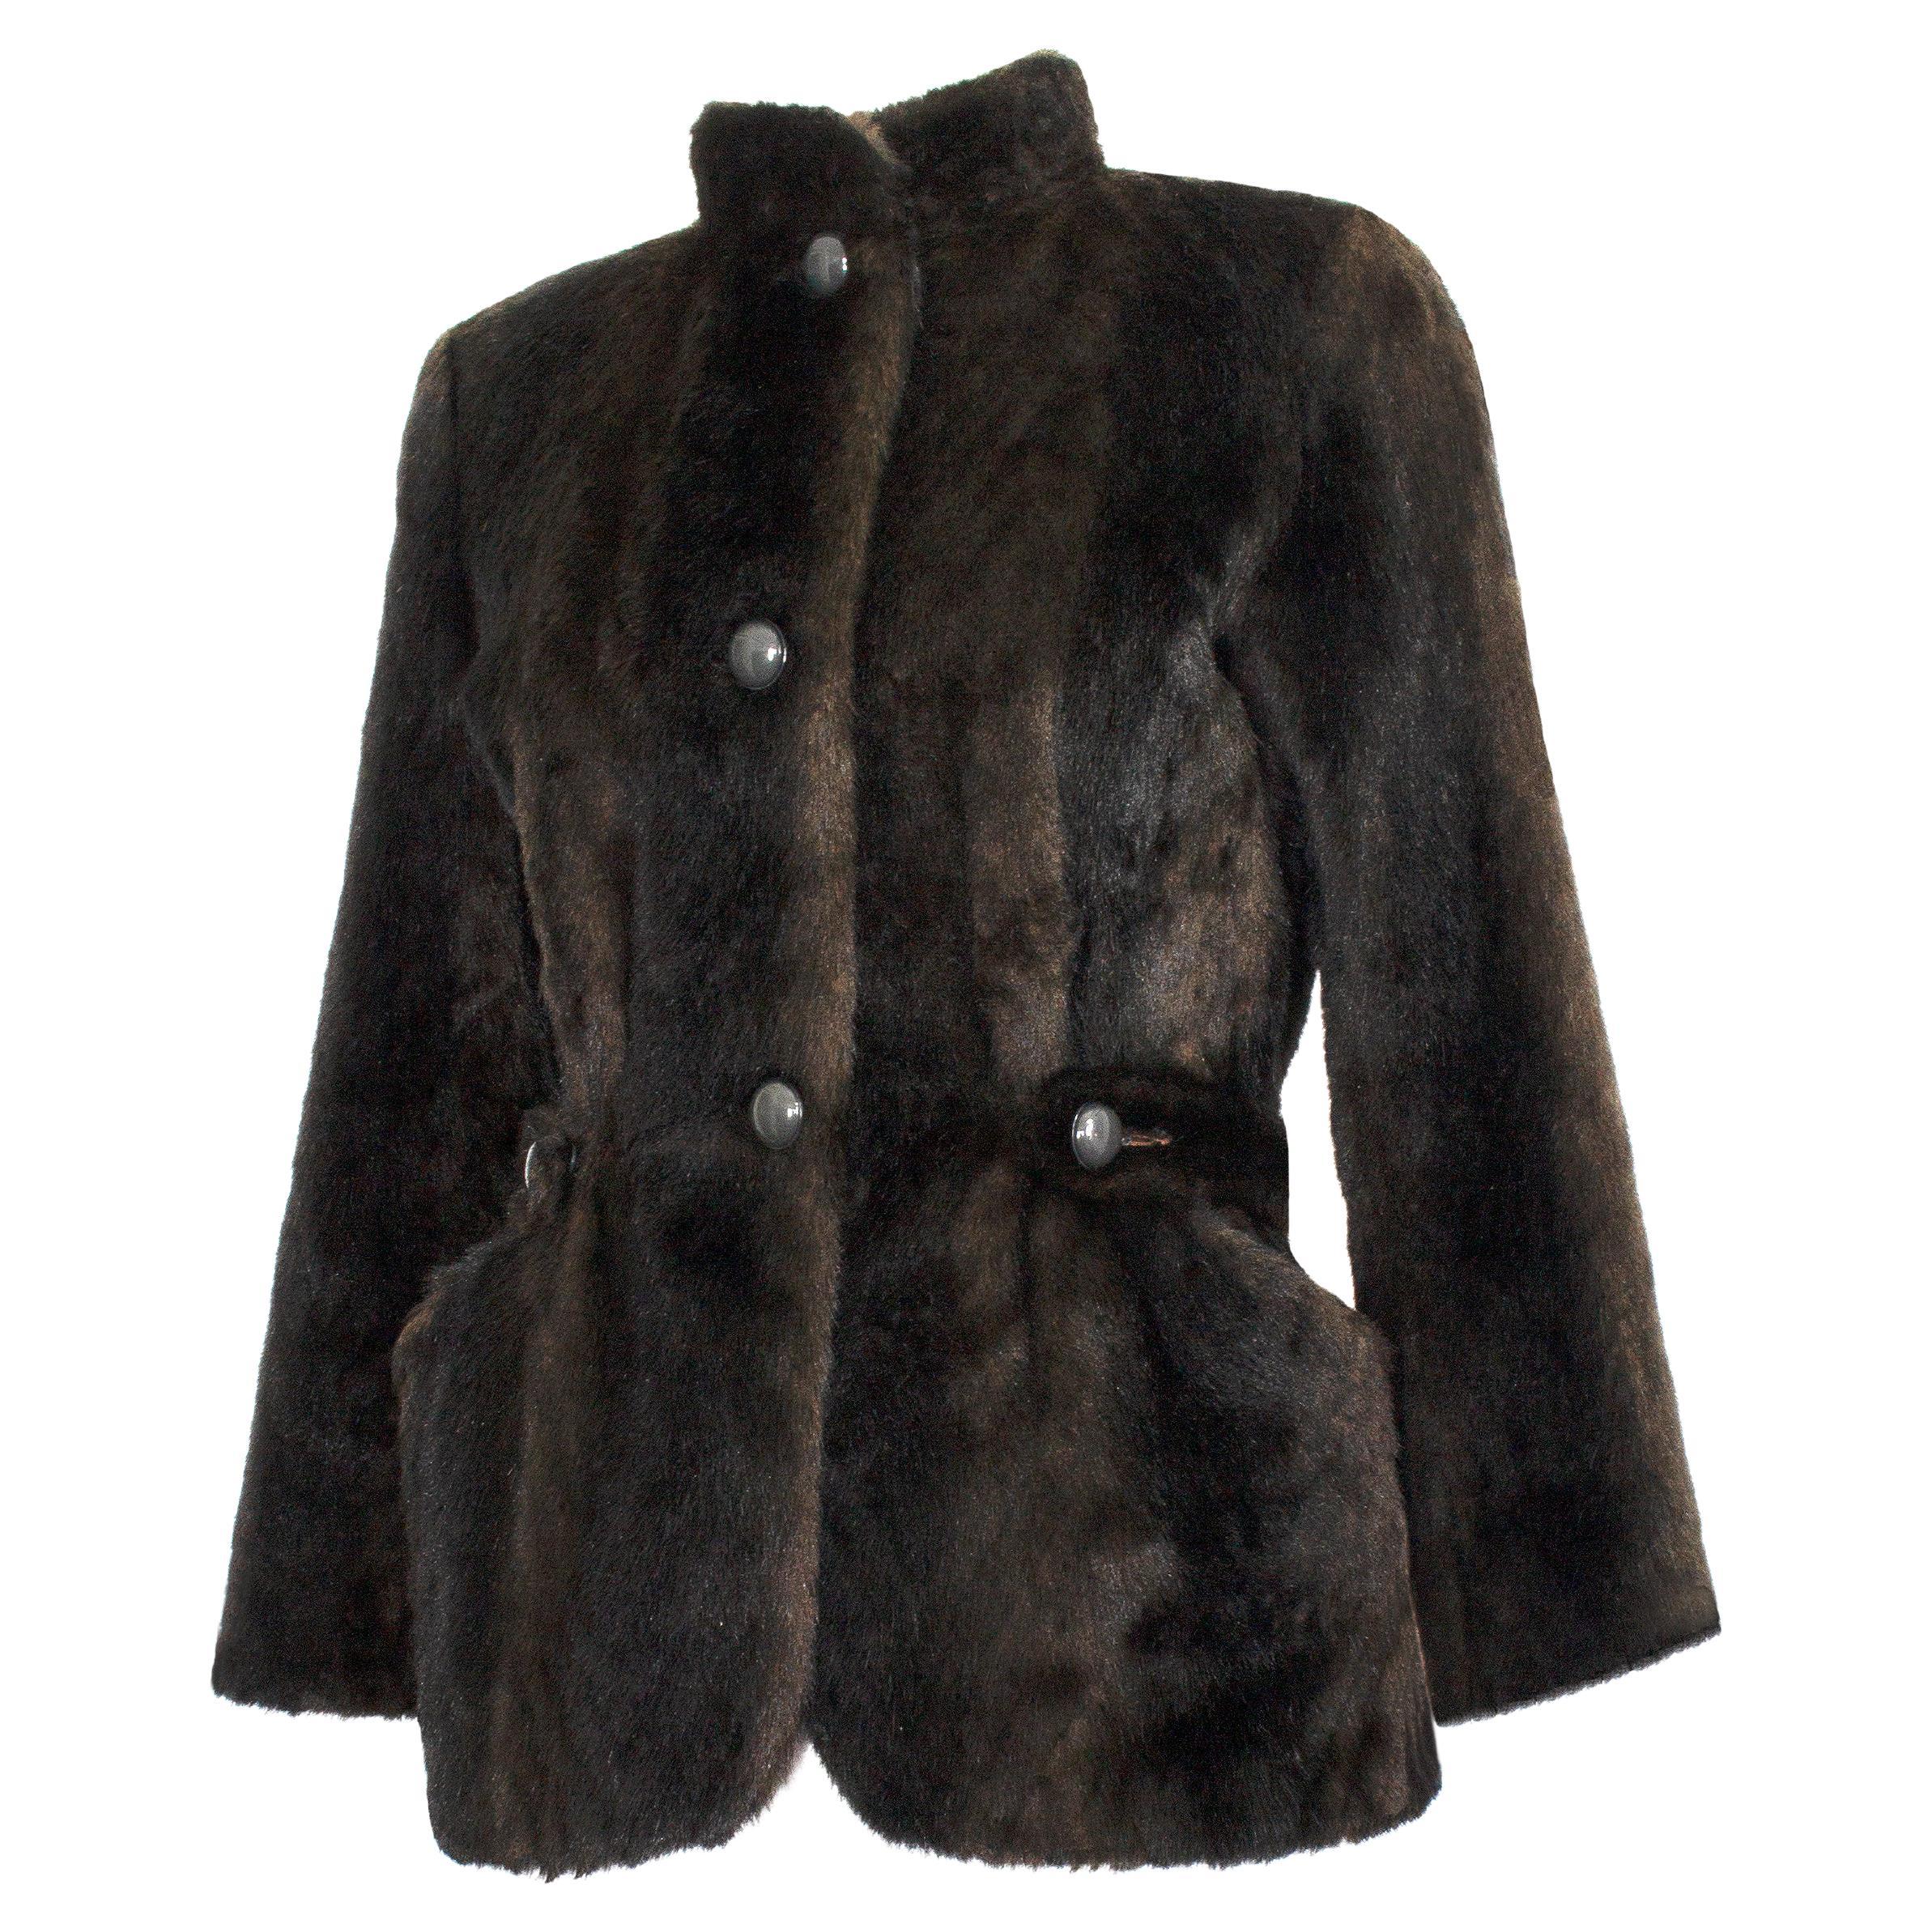 Jean Louis De Paris - RARE - 1950s Vintage - Faux Fur Jacket For Sale ...